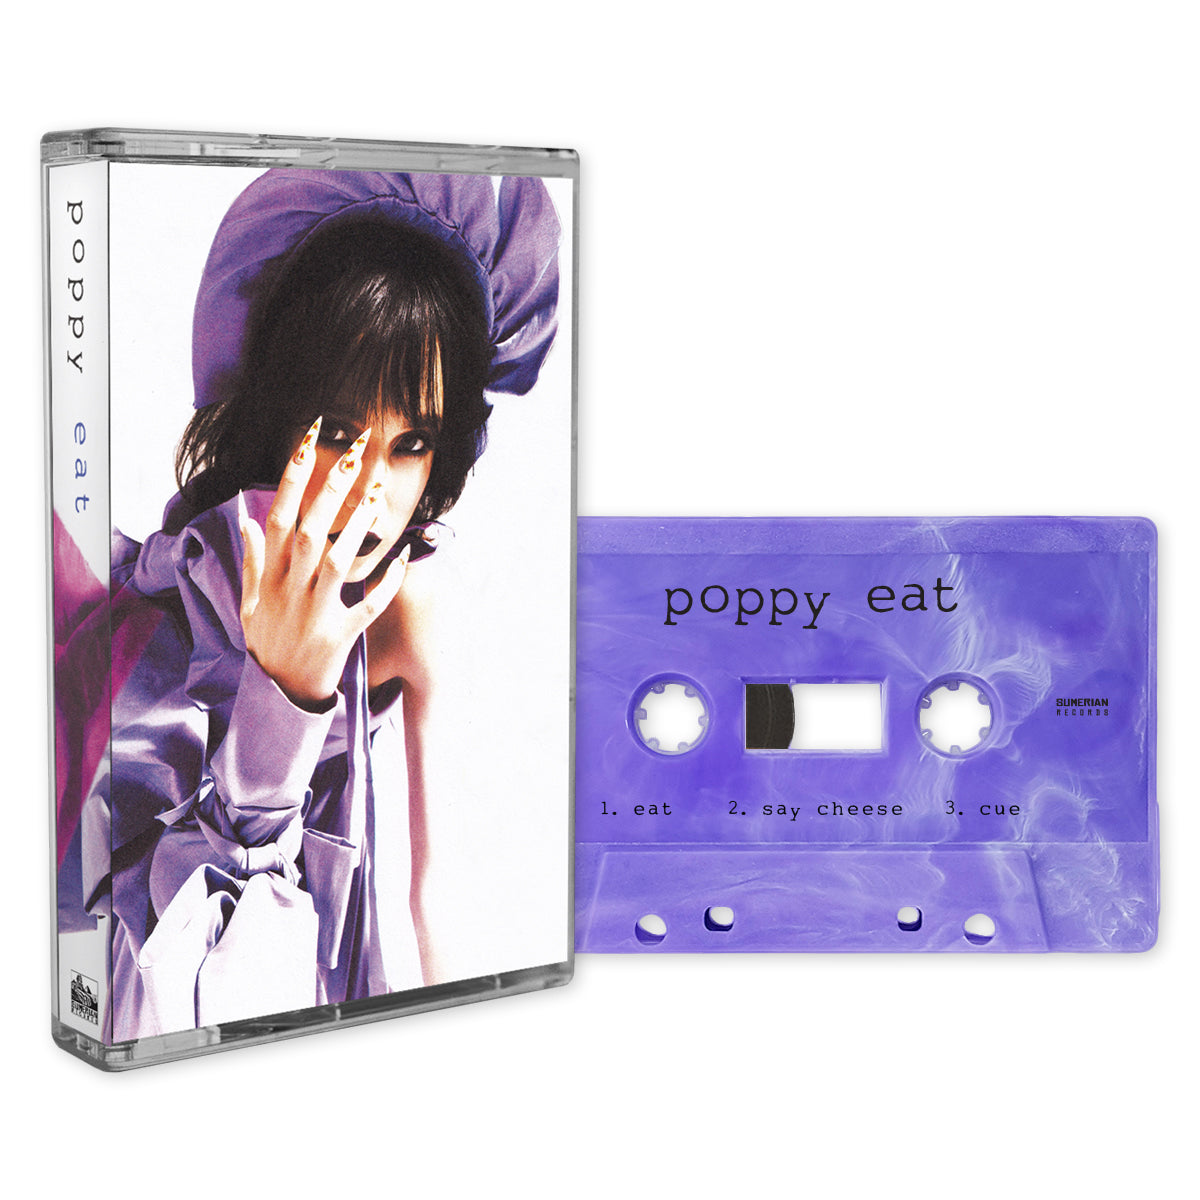 Poppy - "EAT" Purple Cassette Tape